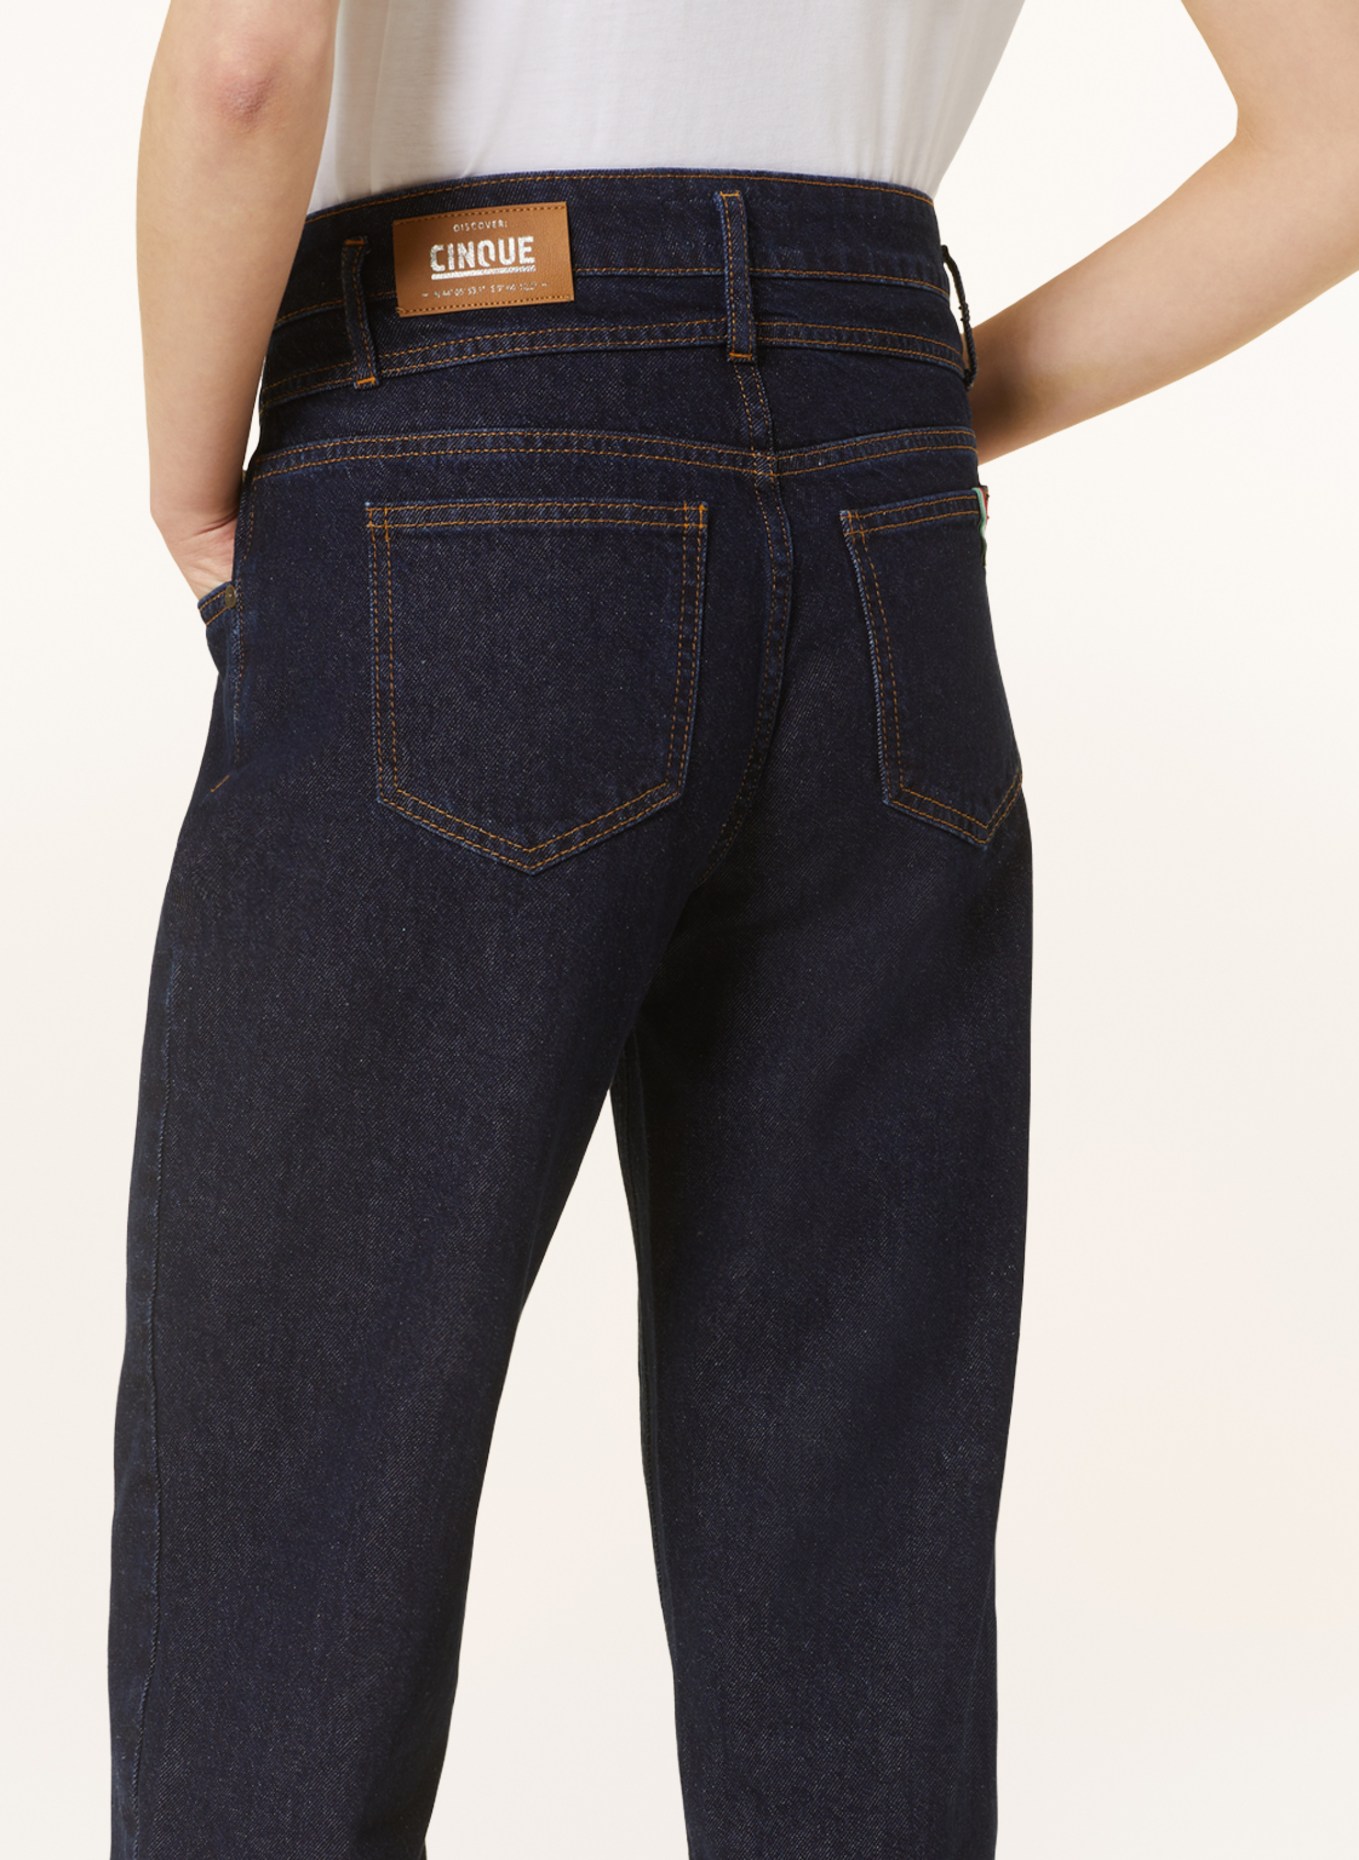 CINQUE Culotte jeans CISOLEIL, Color: 69 DUNKELBLAU (Image 5)